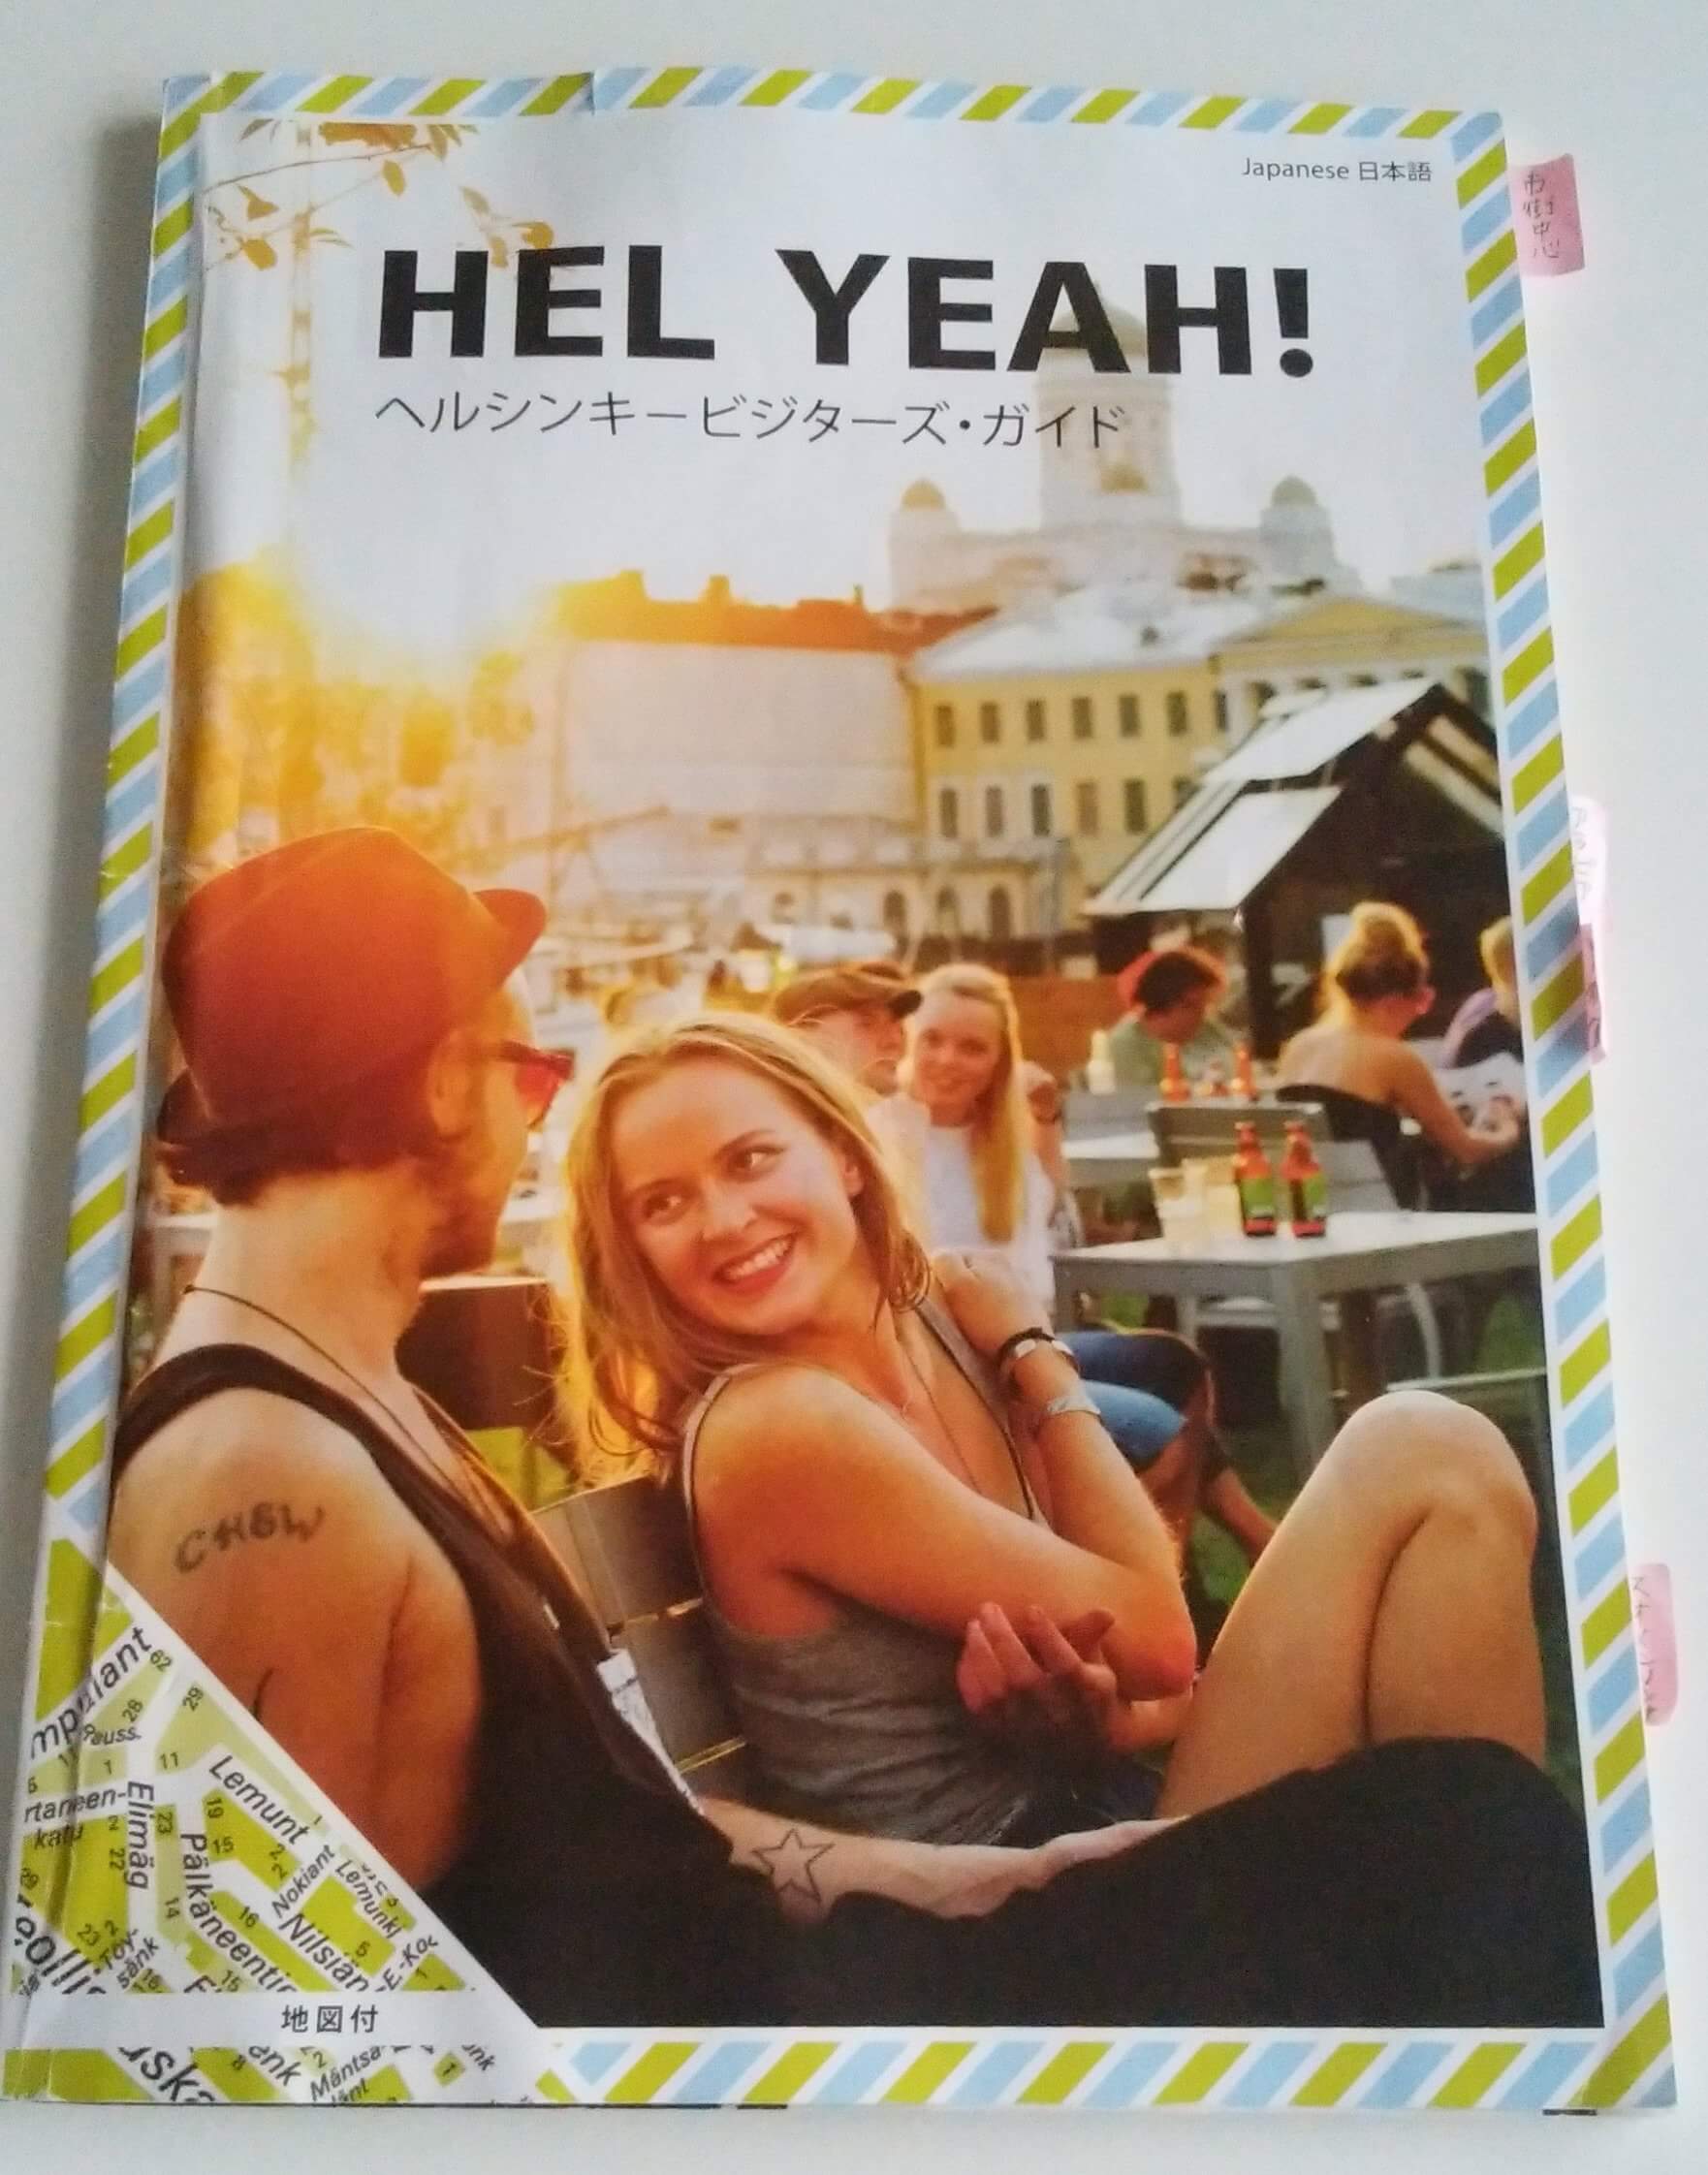 おすすめのヘルシンキ観光ガイド「HEL YEAH!」